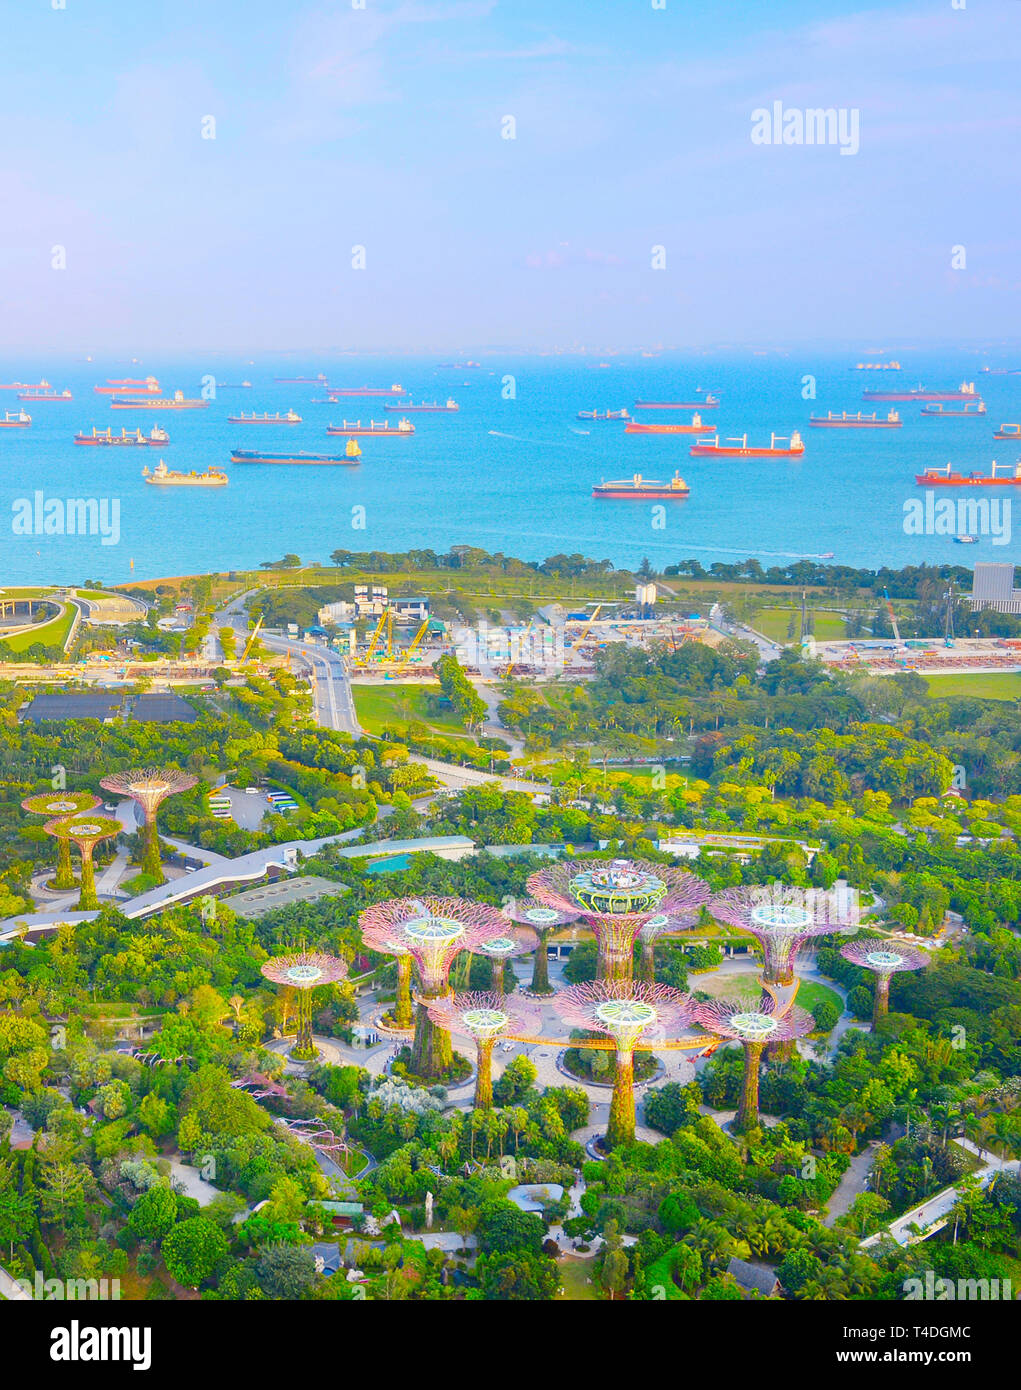 Singapour - 17 février 2017 : Vue aérienne de jardins tropicaux au bord de la baie et du paysage marin avec des cargos, Singapour Banque D'Images